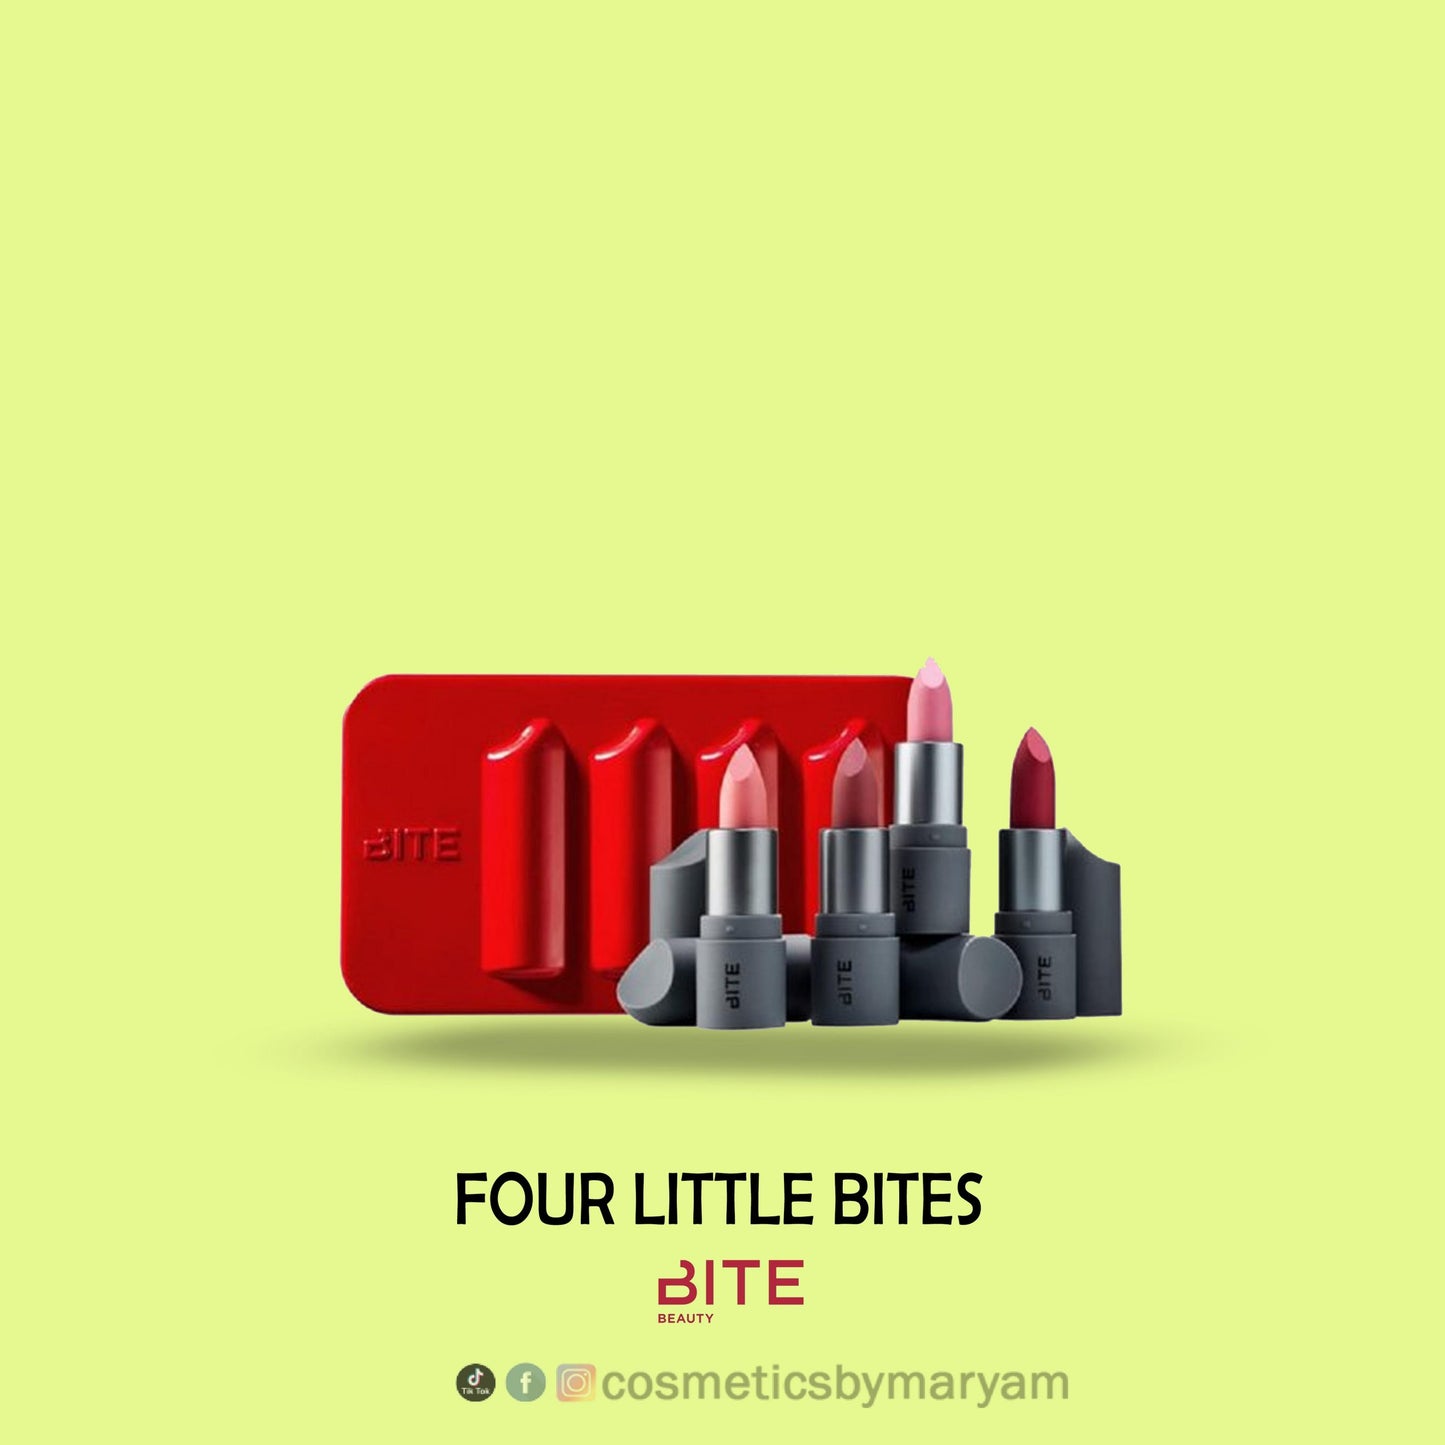 Bite - 4 Little Bites Mini Amuse Bouche Lipstick Set of 4